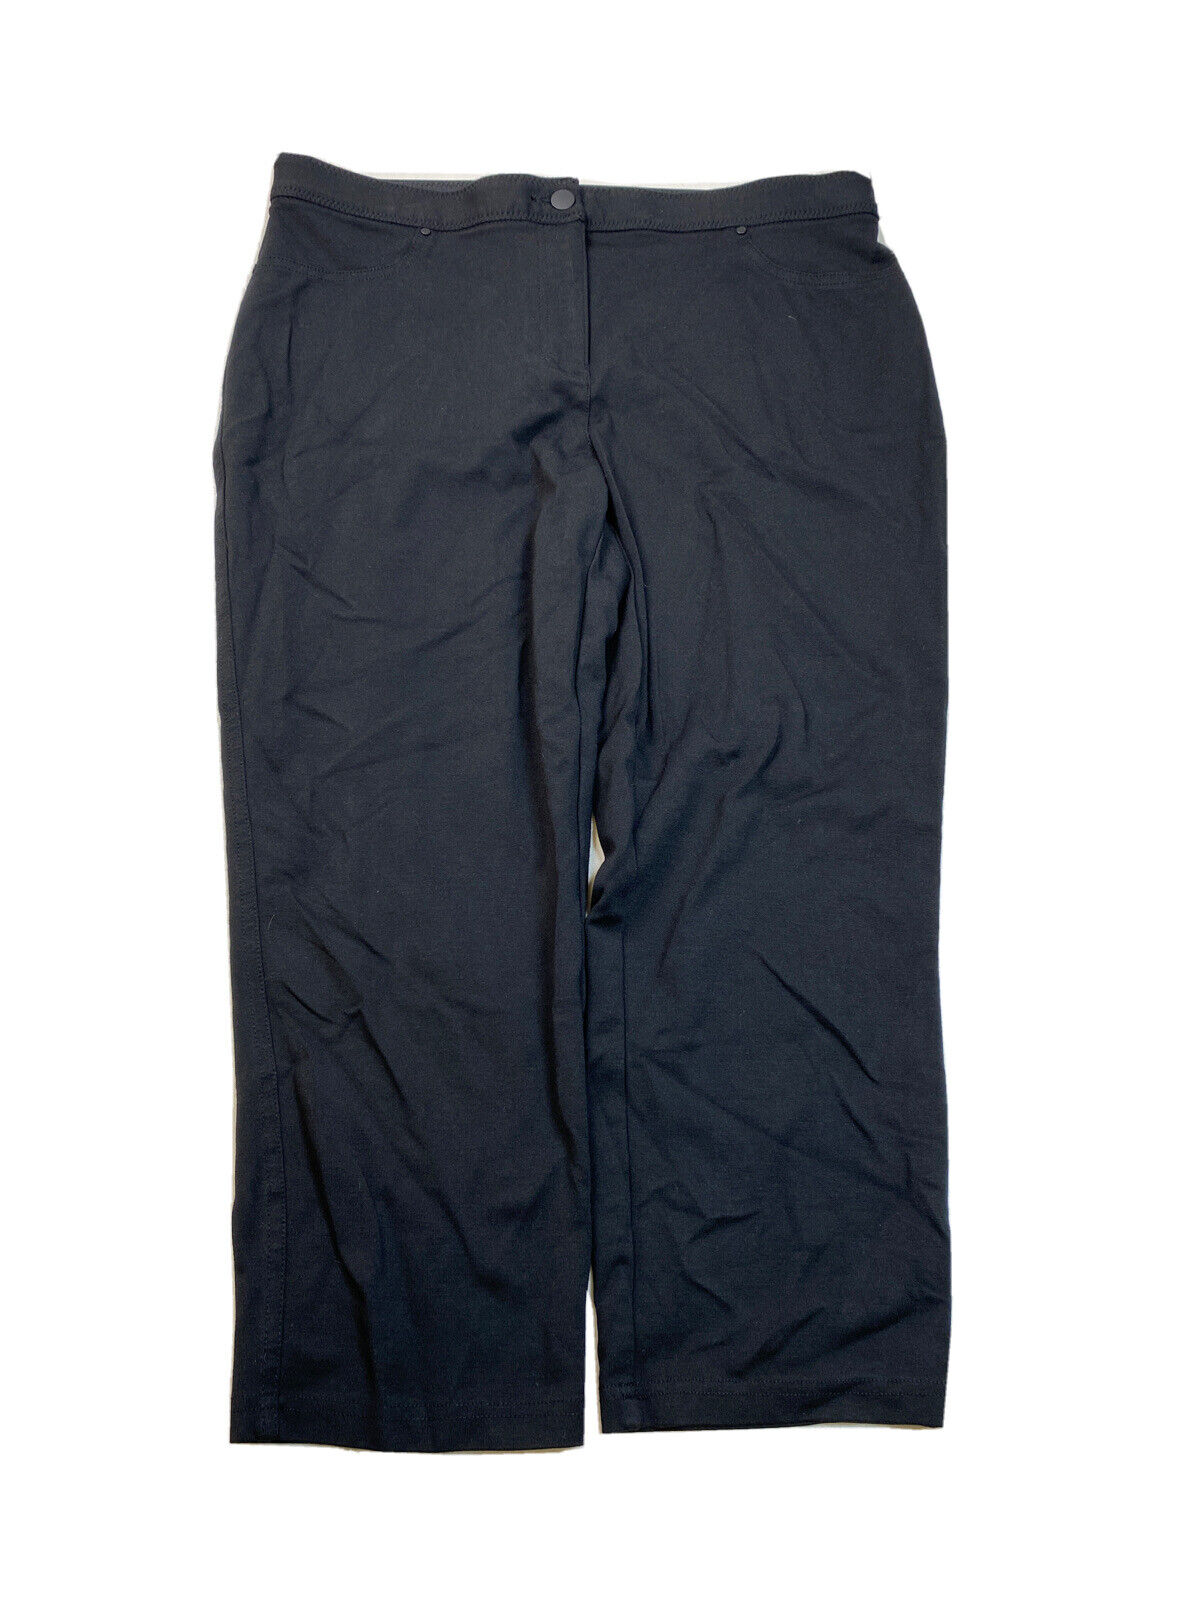 Chico's Pantalones cortos rectos con cintura elástica para mujer, color negro, 1,5 US 10